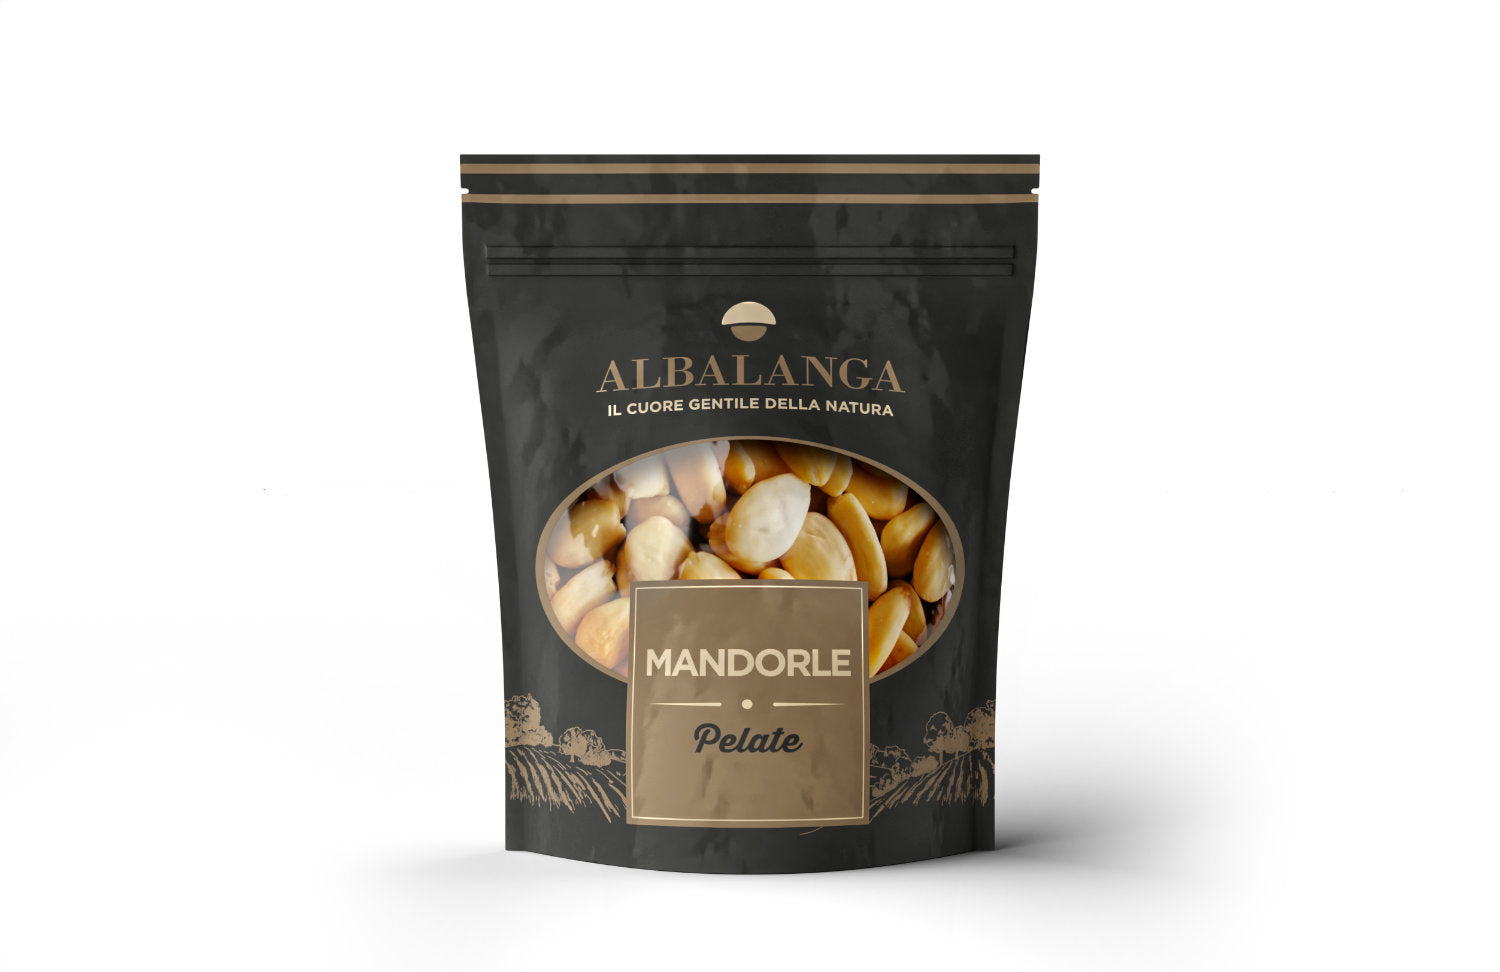 ALBALANGA - Frutta Secca in Sacchetto - I migliori prodotti Made in Italy da Fiera di Monza Shop - Solo 9.80€! Acquista subito su Fiera di Monza Shop!